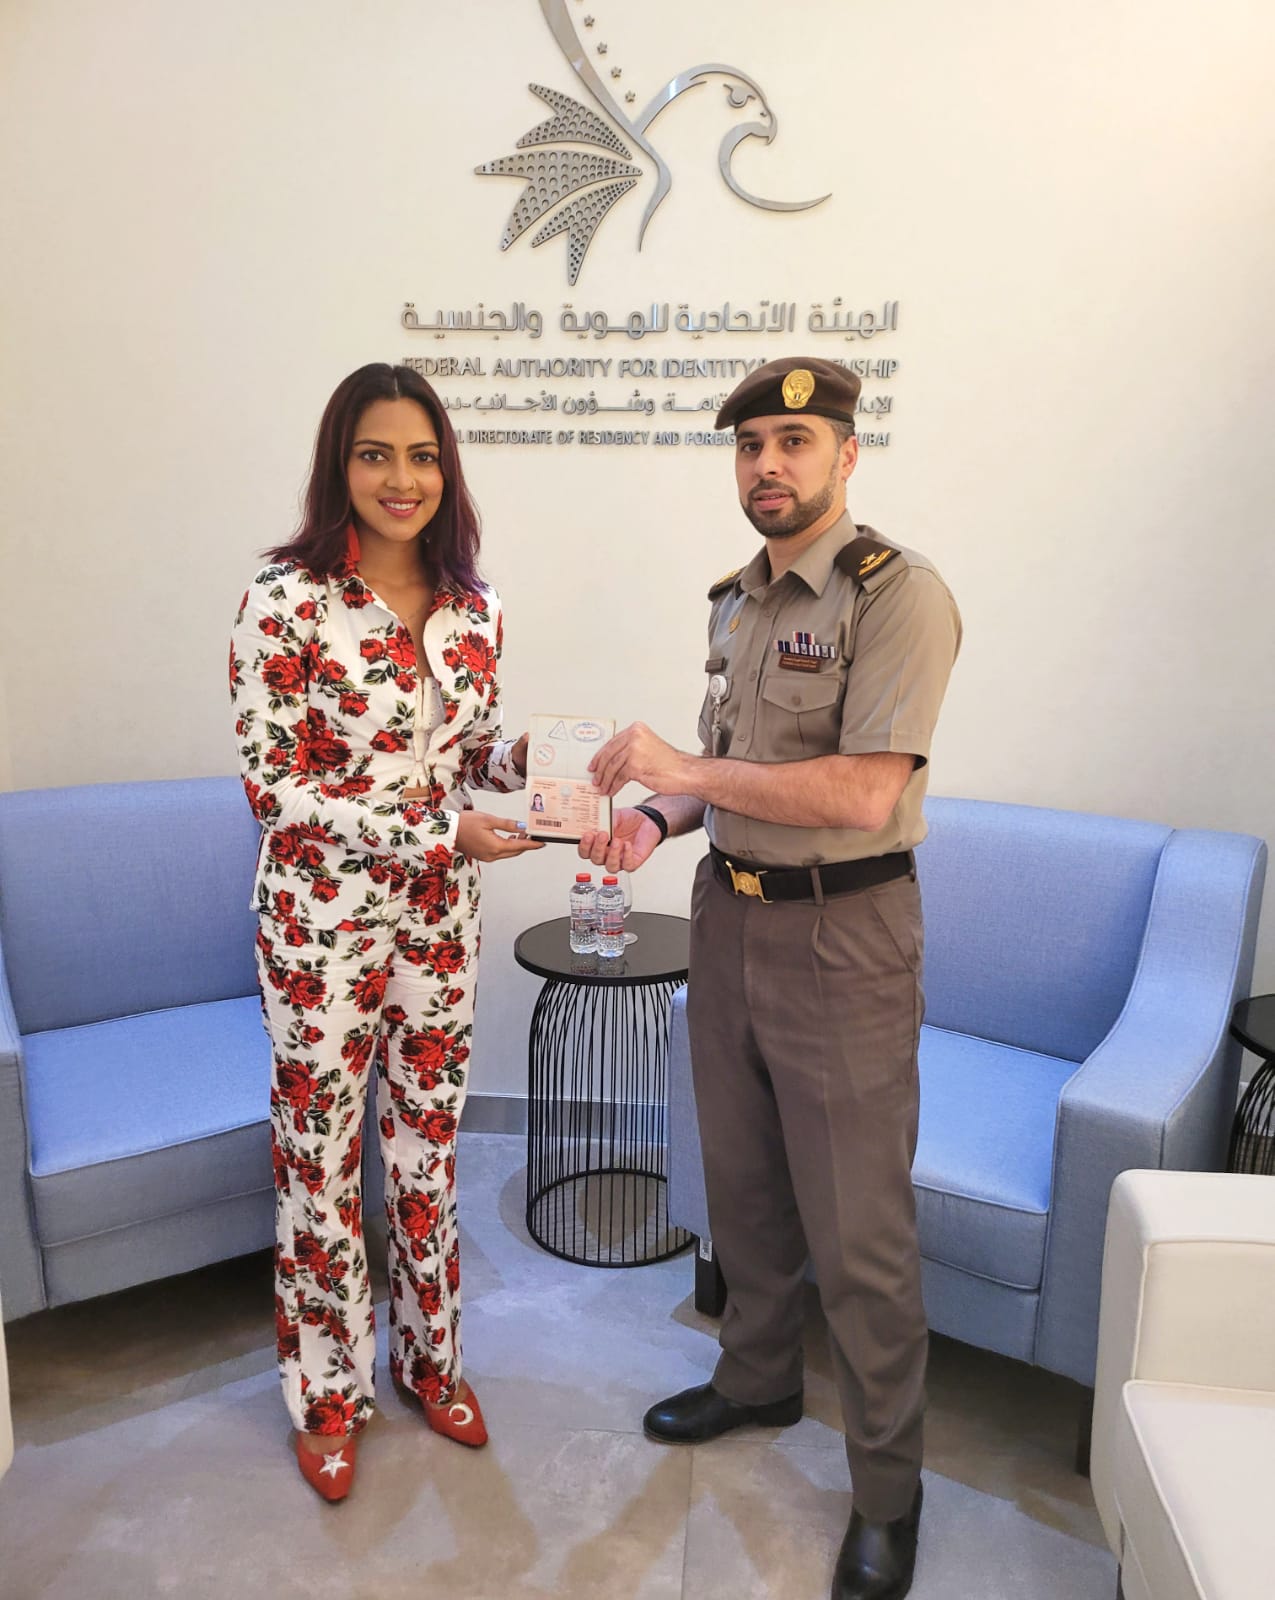 Actress Amala Paul granted GOLDEN VISA by DUBAI GOVERNMENT